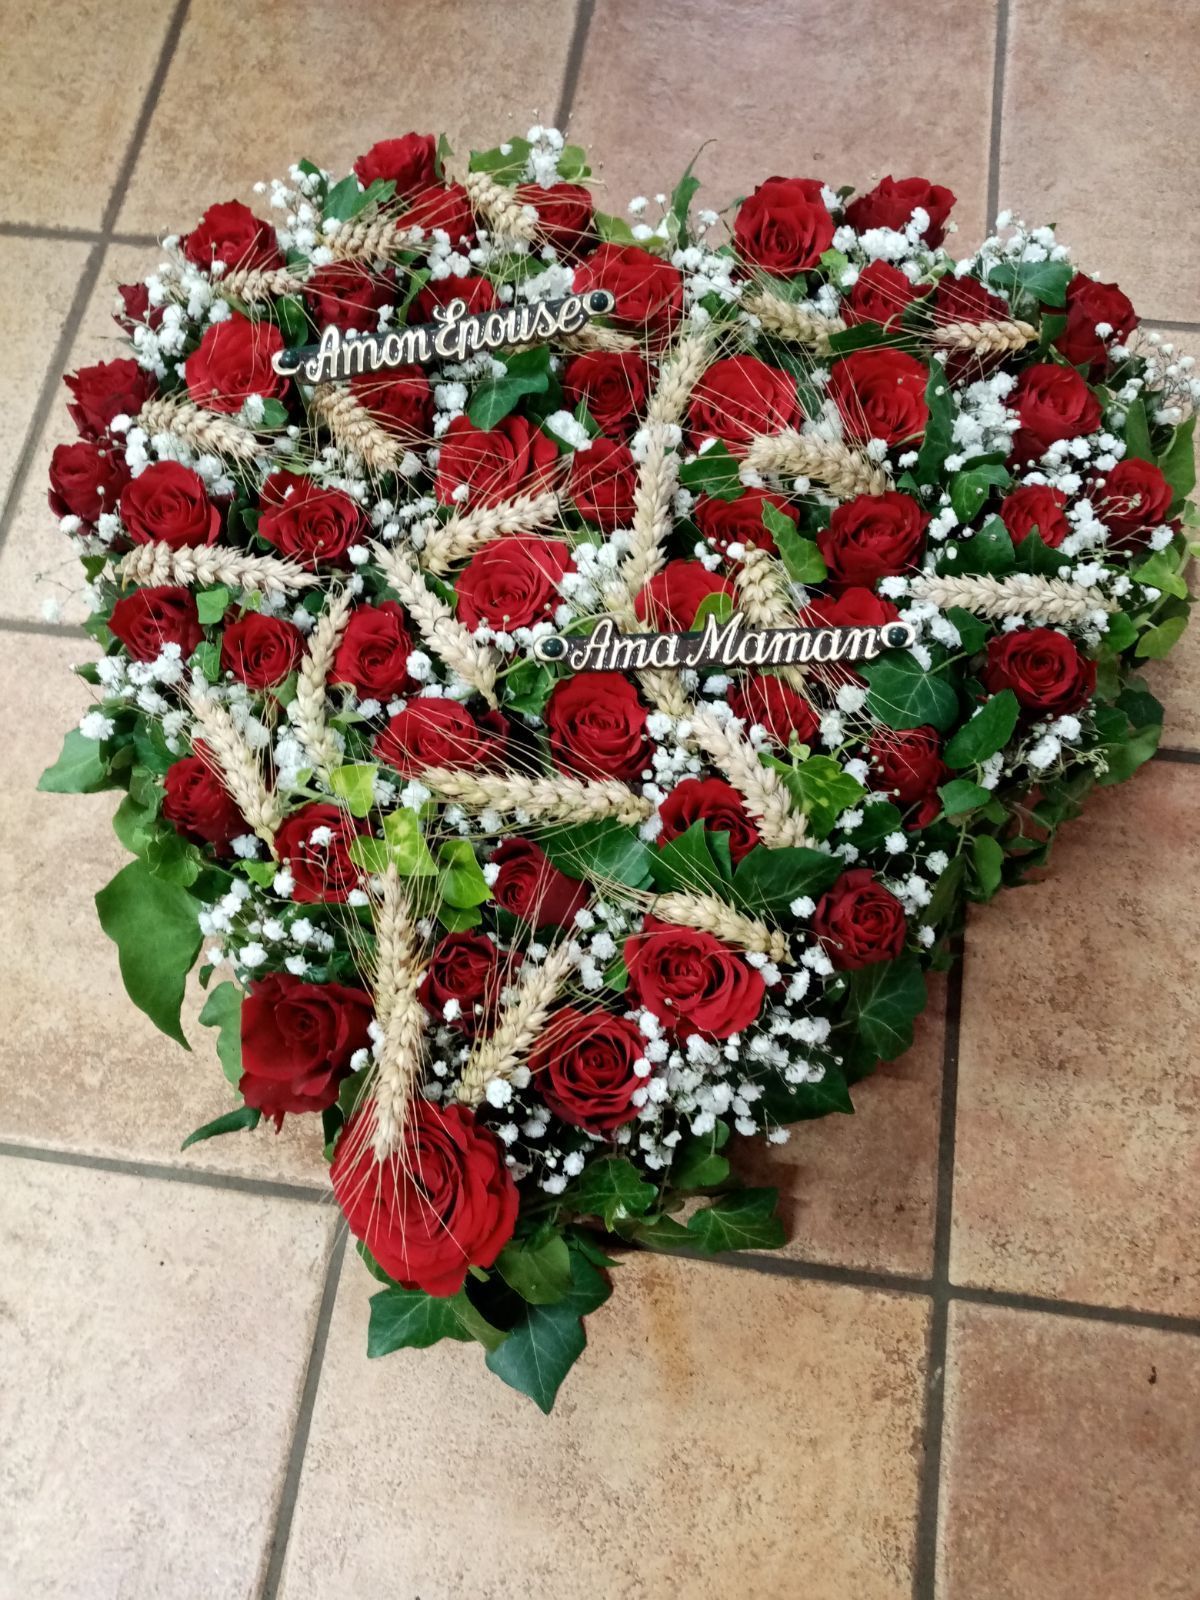 Une composition florale en forme de cœur avec des roses rouges